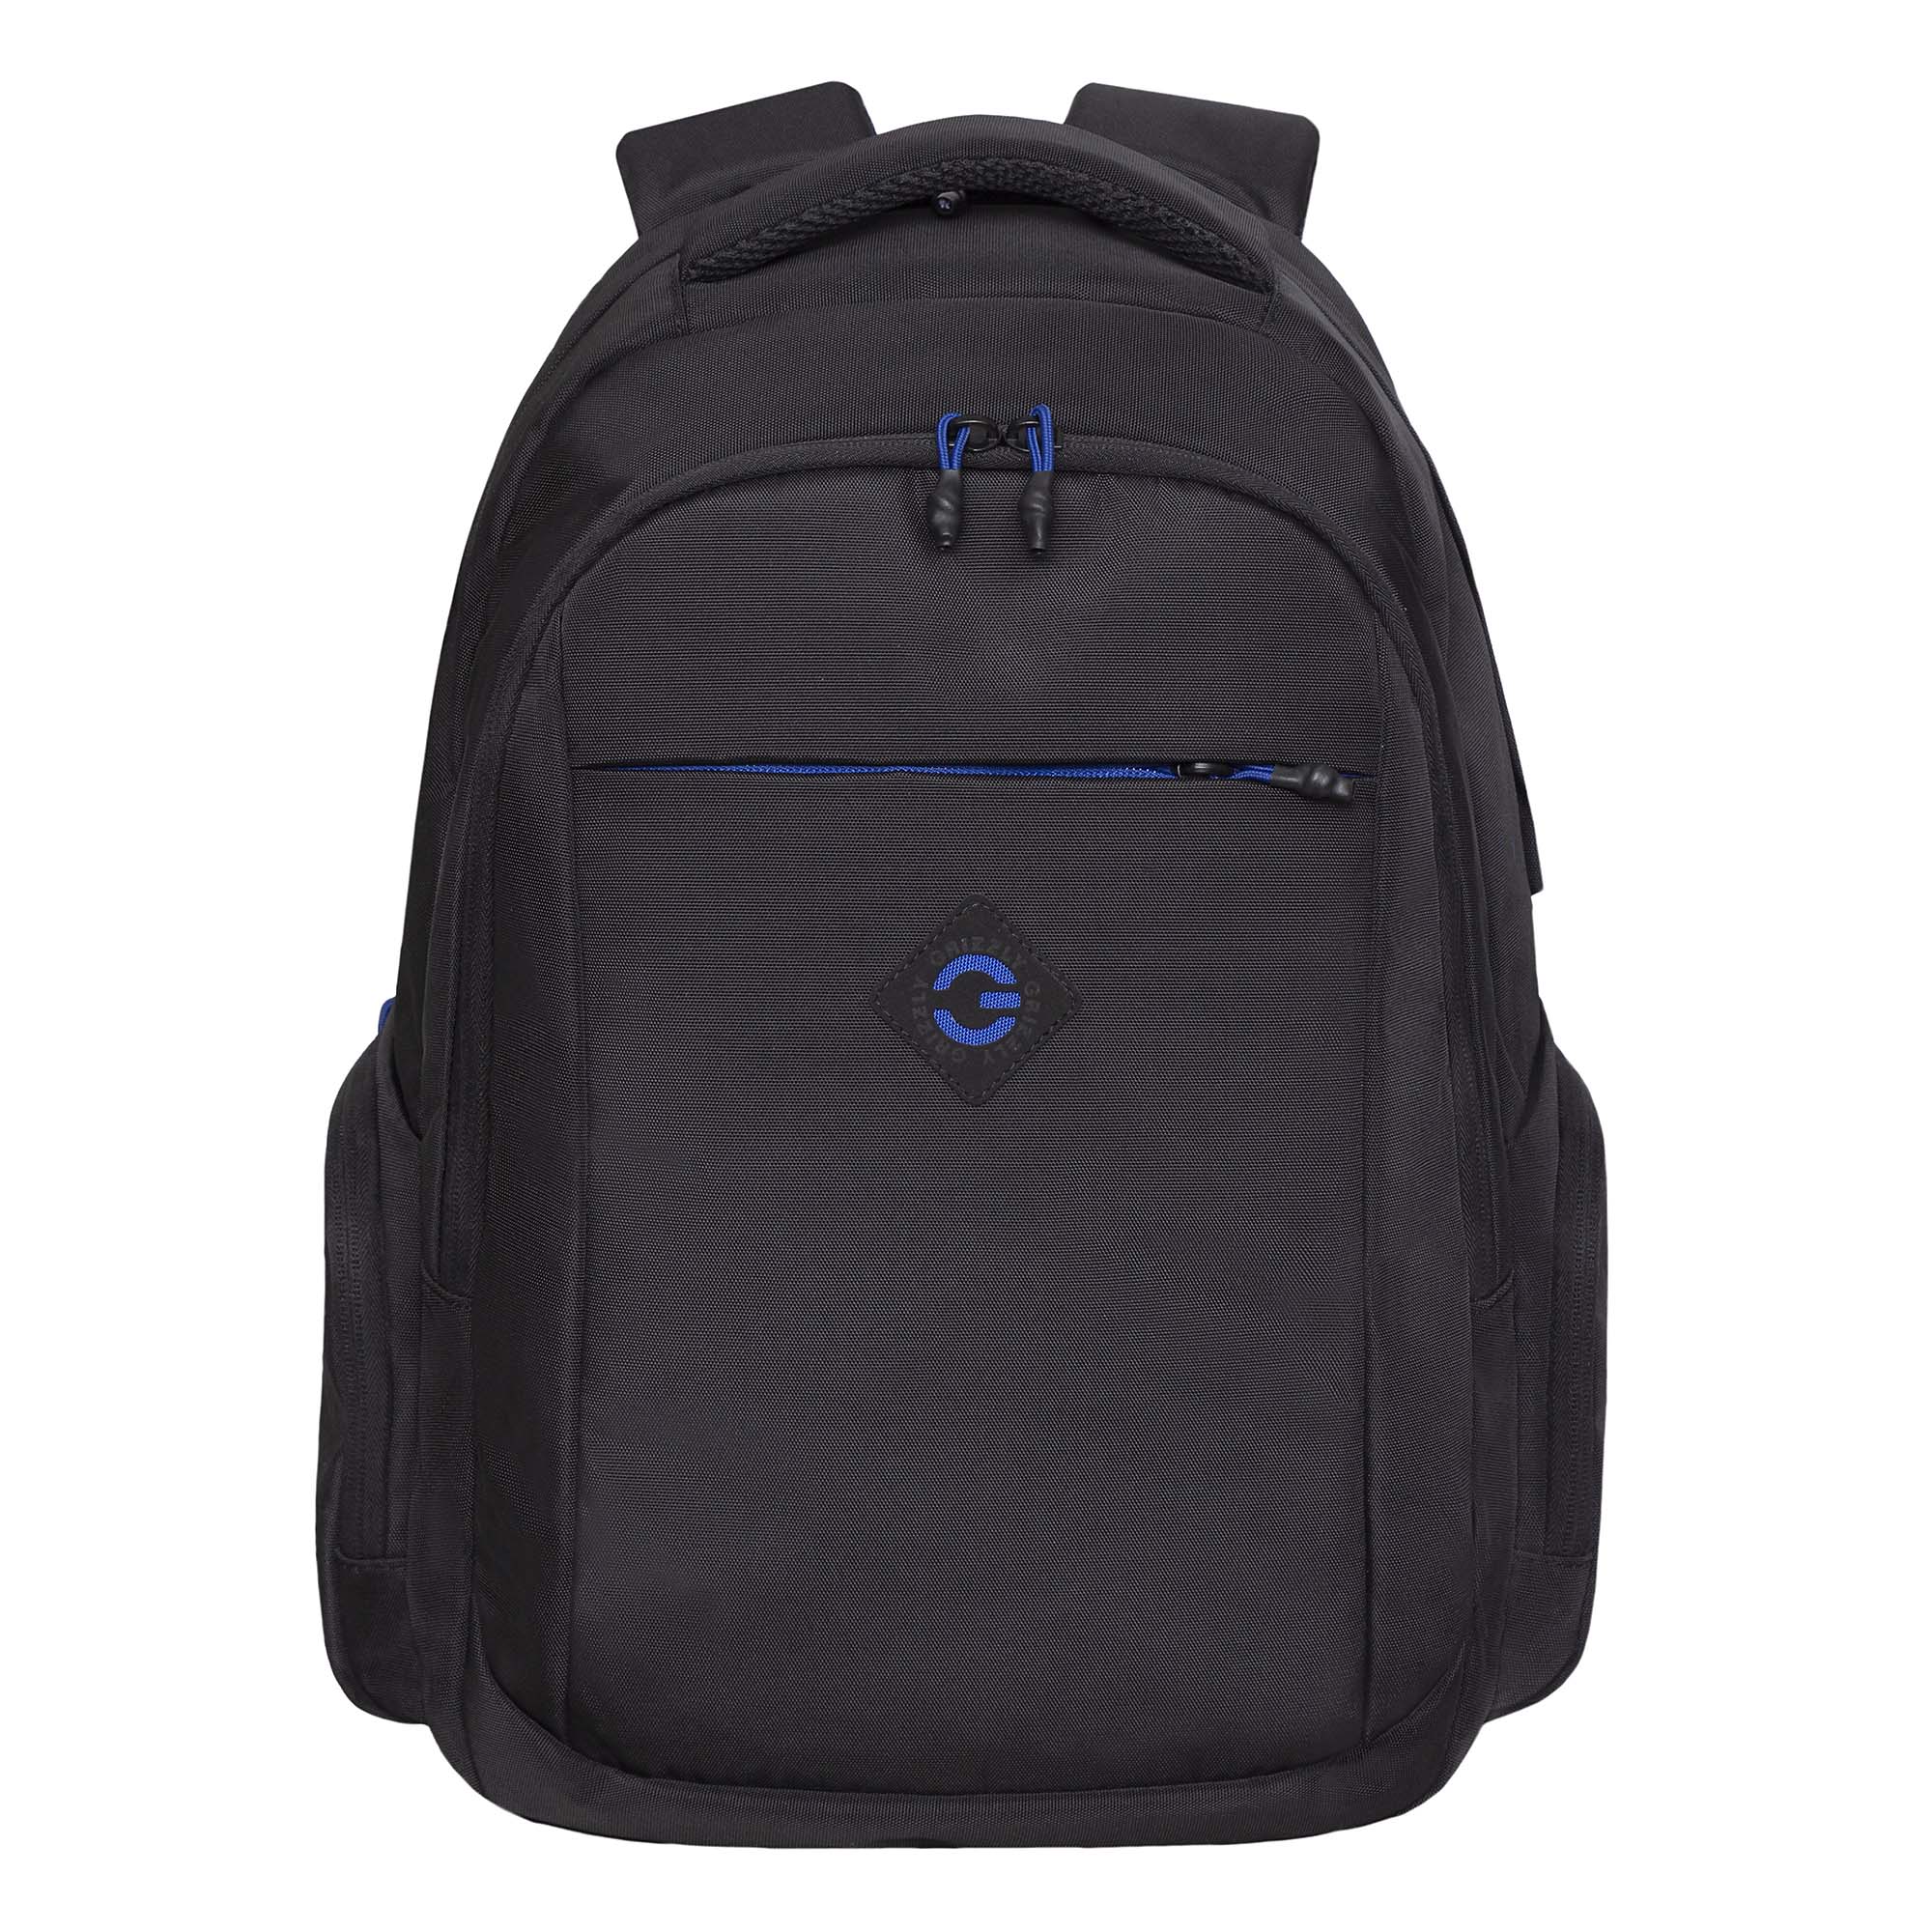 Рюкзак Grizzly школьный для мальчика RQ-310-2 1 черный - синий